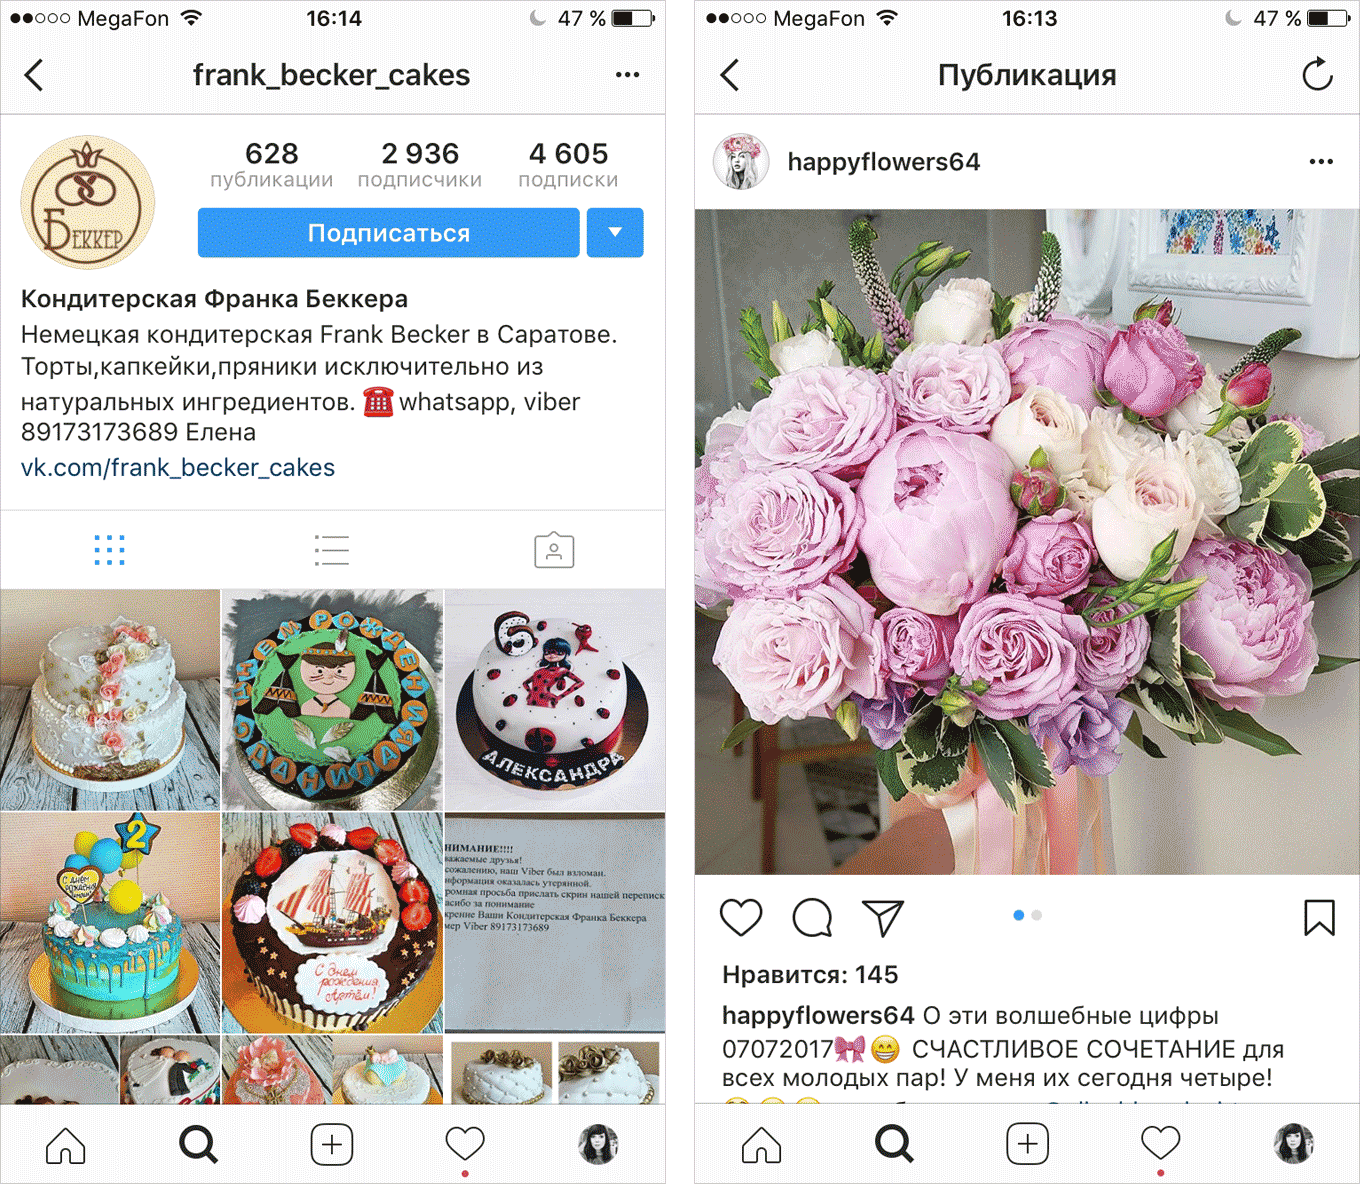 Posty z reklamami twoich produktów mogą być promowane: płacić pieniądze Instagram, a to pokazuje twoje reklamy użytkownikom, których potrzebujesz